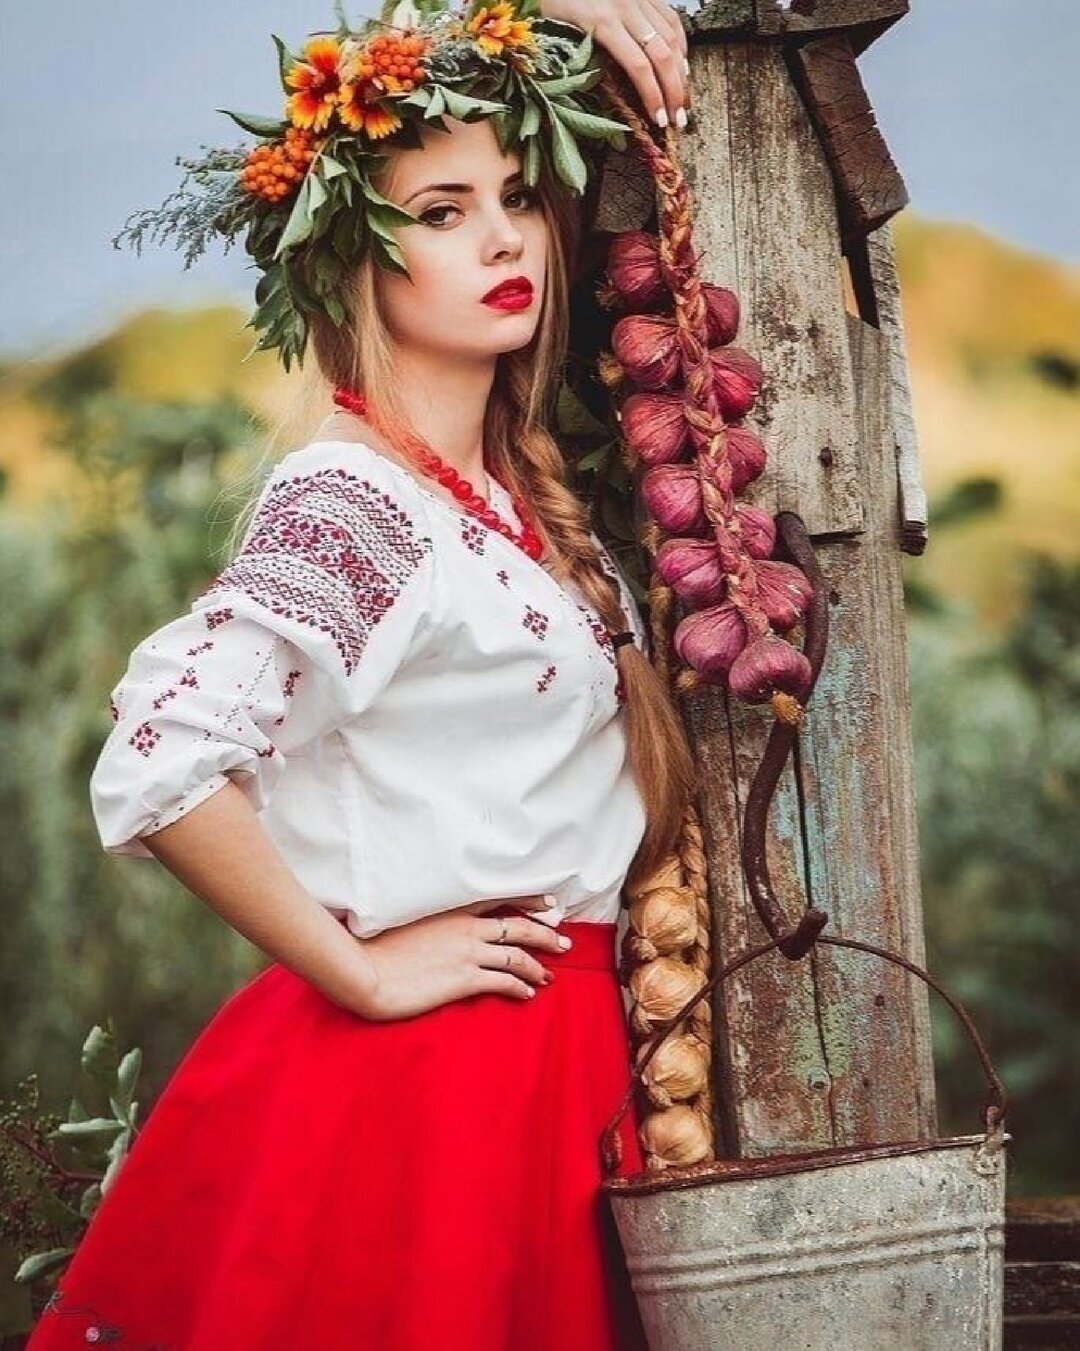 Молодые девушки украины. Украинский национальный костюм. Украинские красавицы. Образ украинской красавицы. Фотосессия в русском стиле.